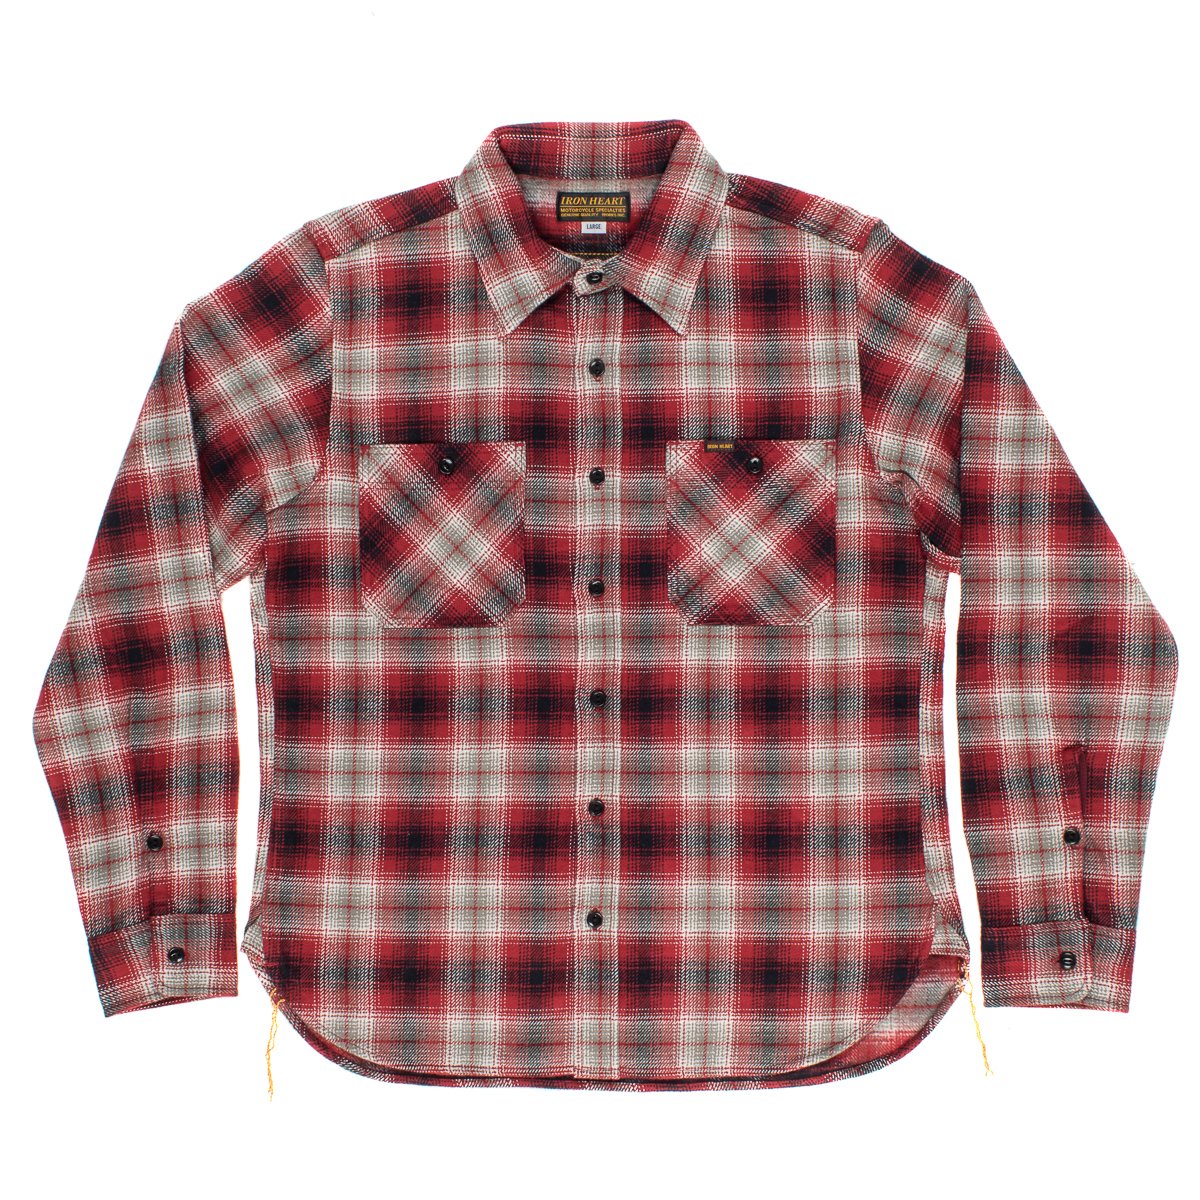 iron heart flannel shirt